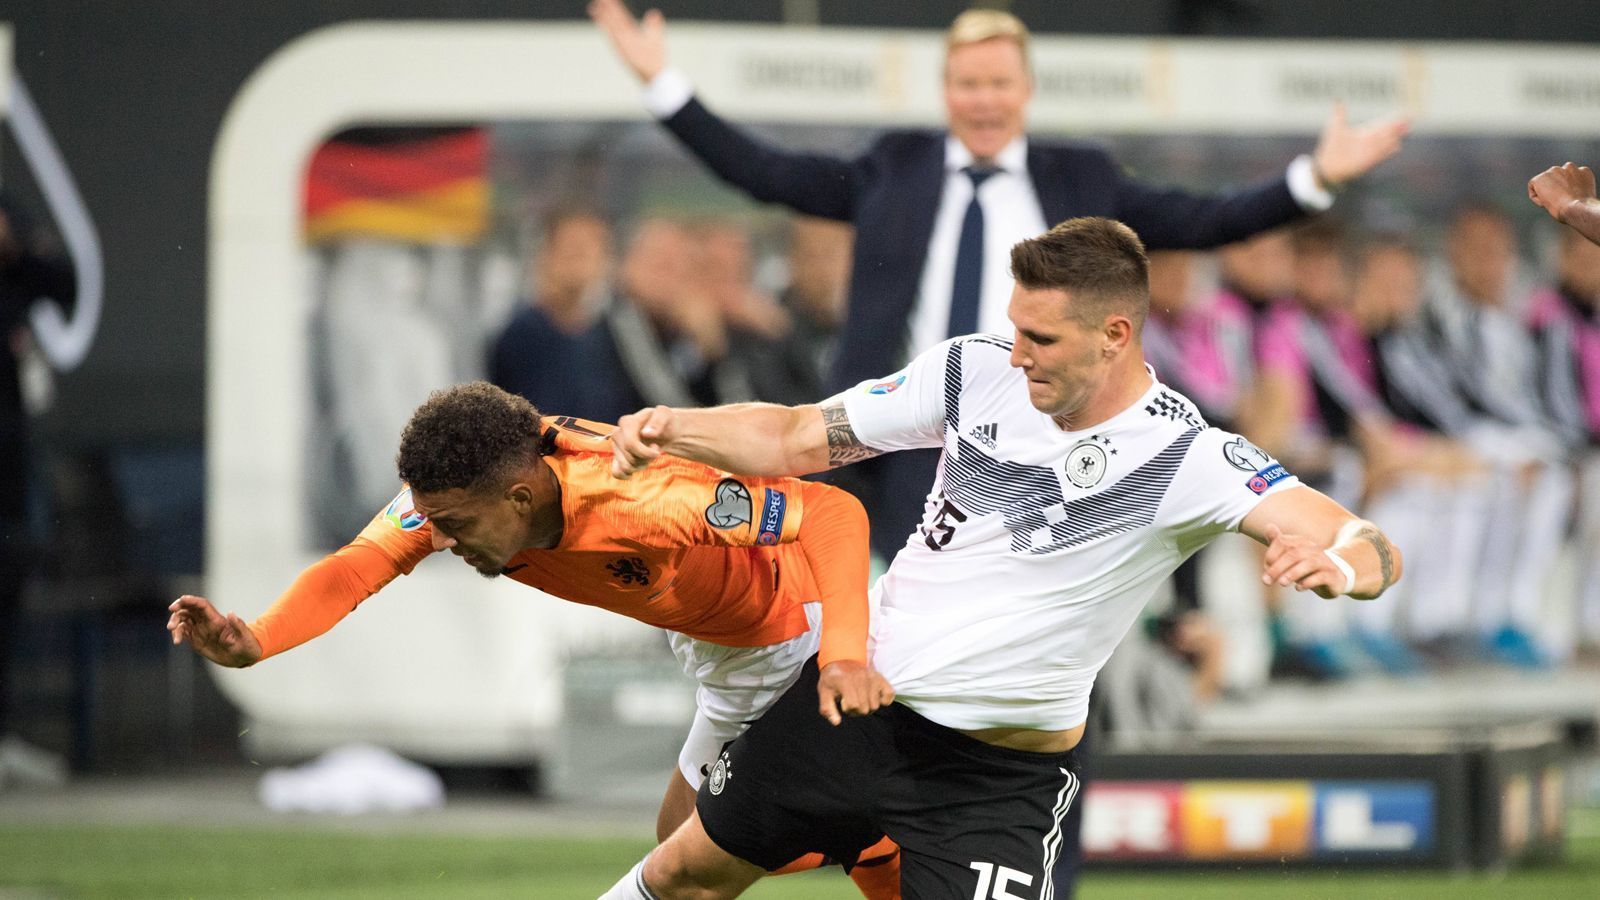 <strong>Deutschland – Niederlande 3:2, 2:4 (EM-Qualifikation 2021)</strong><br>
                In der EM-Qualifikation muss sich Deutschland im September 2019 beugen. "Holland war über 90 Minuten die bessere Mannschaft, wir haben verdient verloren", sagte Bundestrainer Joachim Löw. Das Hinspiel gewinnt Deutschland allerdings knapp und auch in der Endabrechung ist das DFB-Team vor den Nachbarn. Immerhin.
